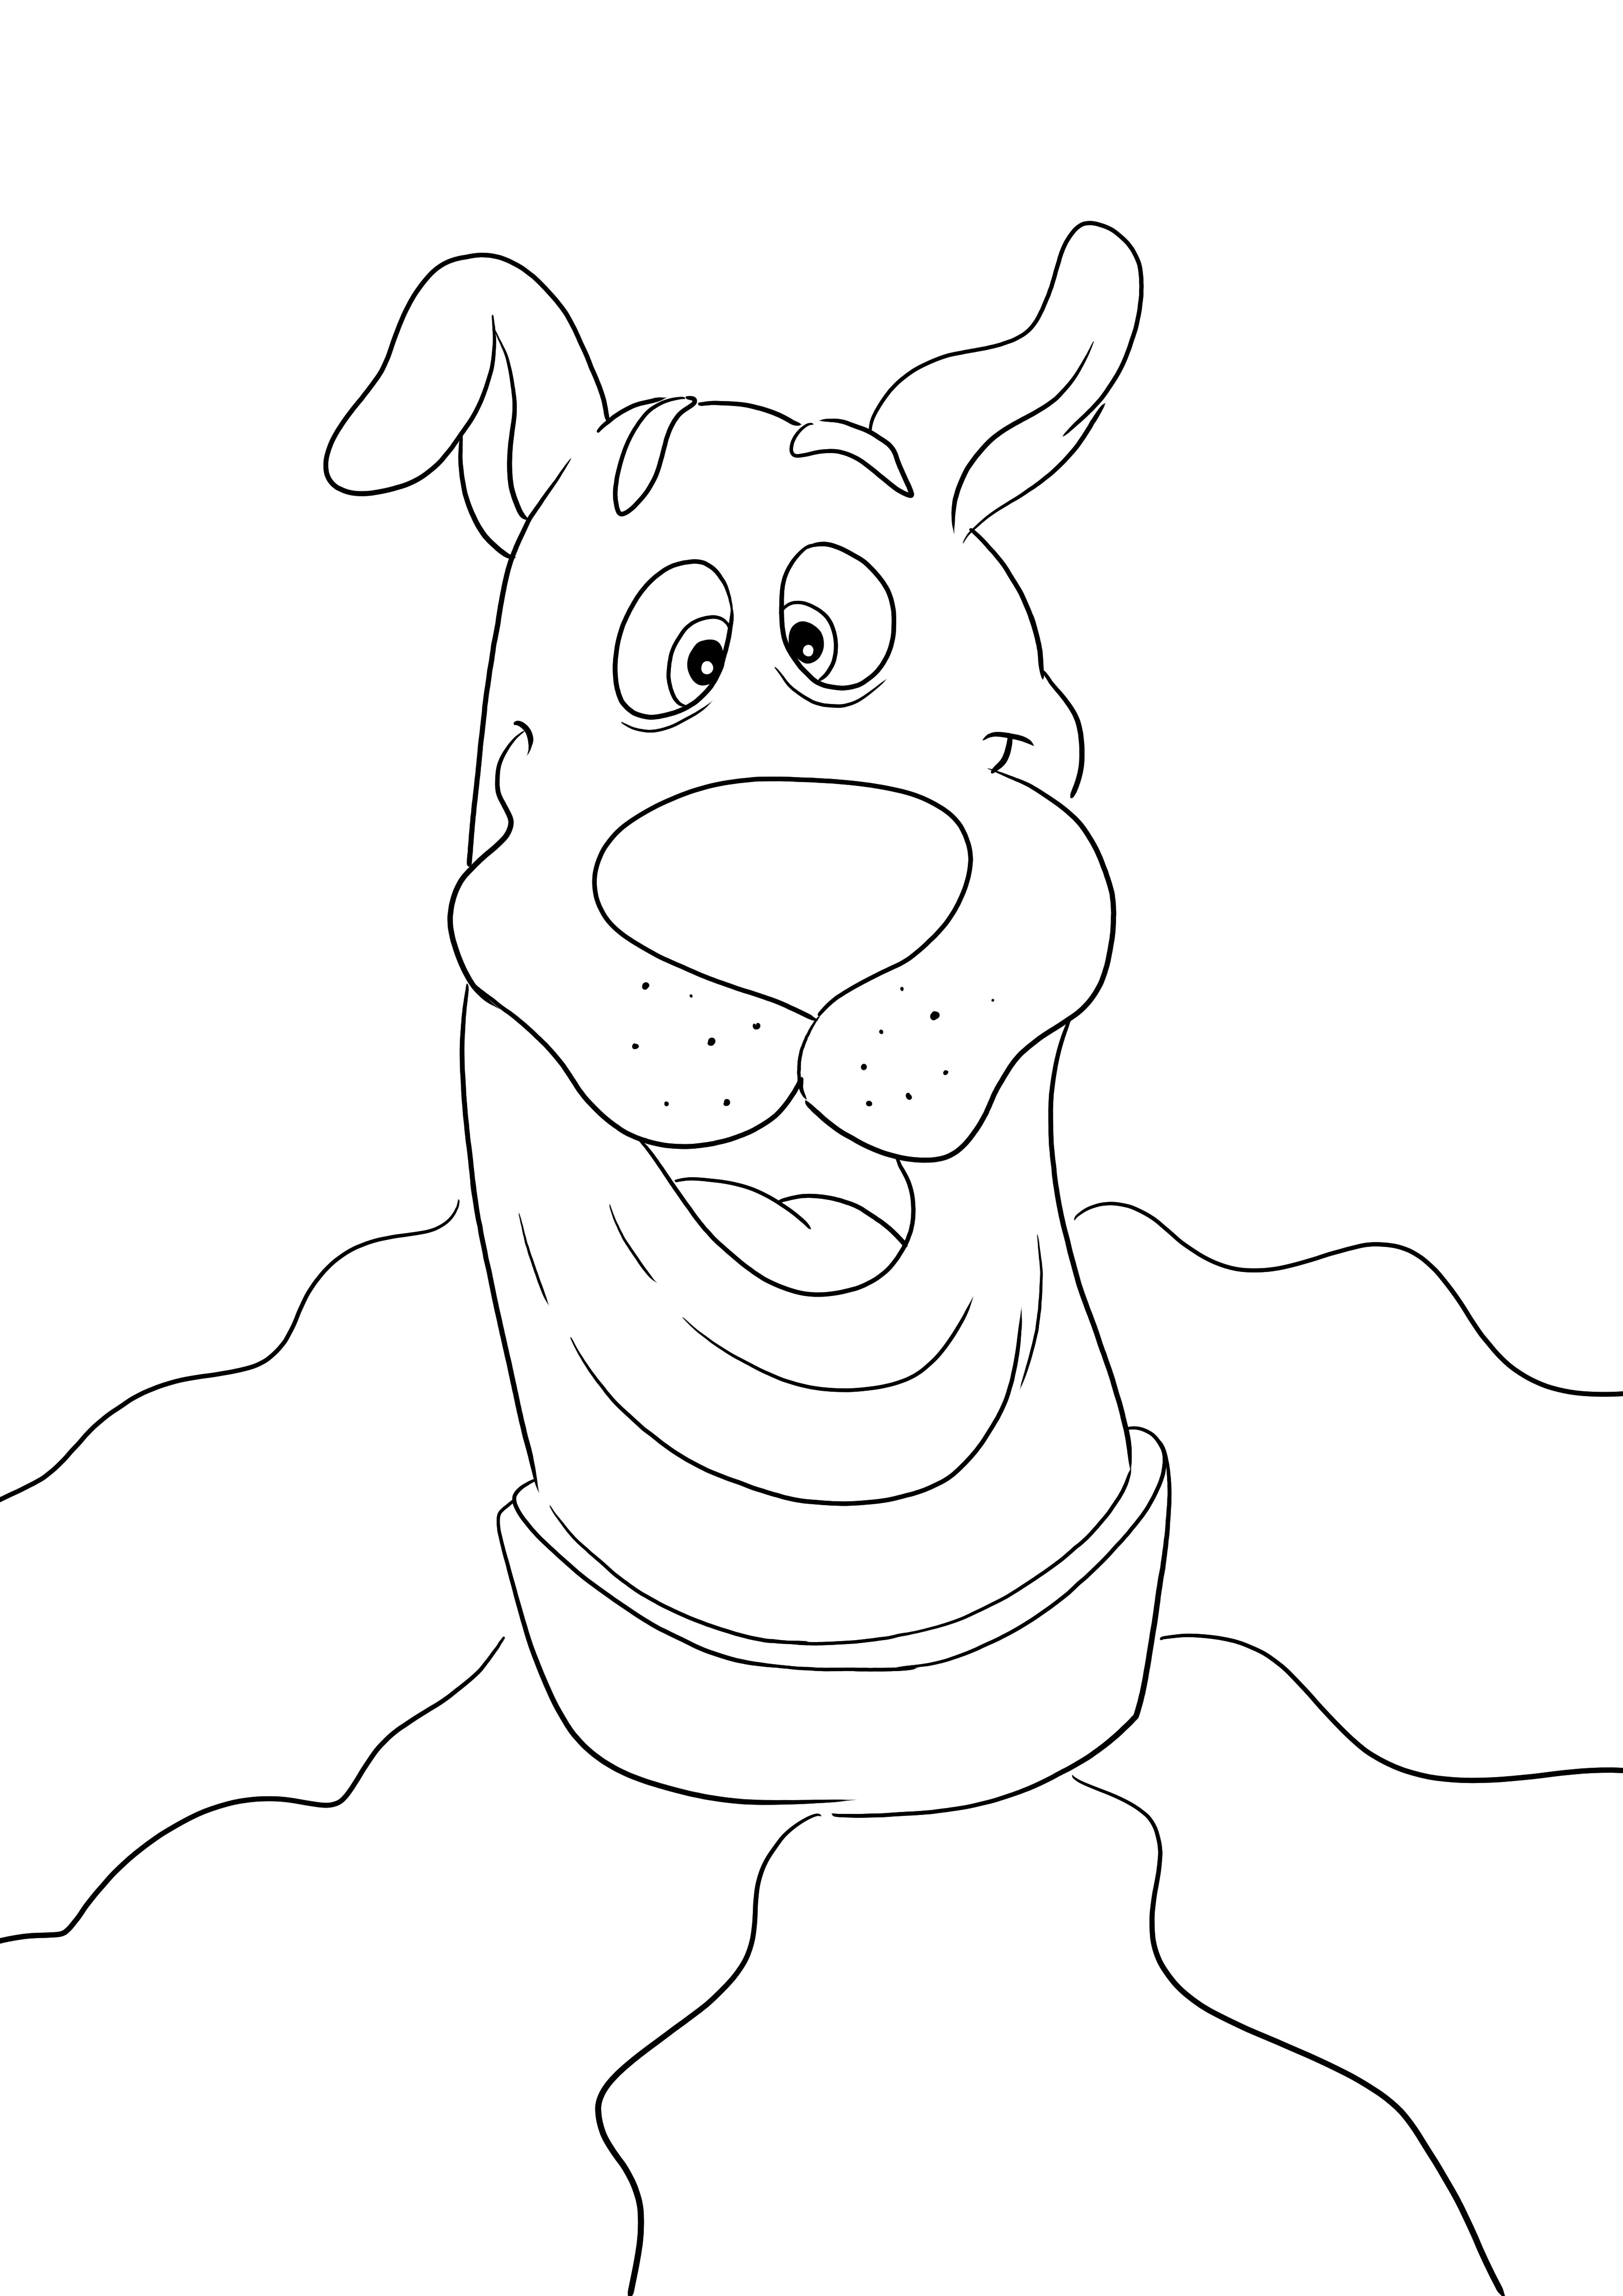 Iată imprimarea noastră gratuită a feței amuzante a lui Scooby pentru a fi colorată în timp ce te distrezi